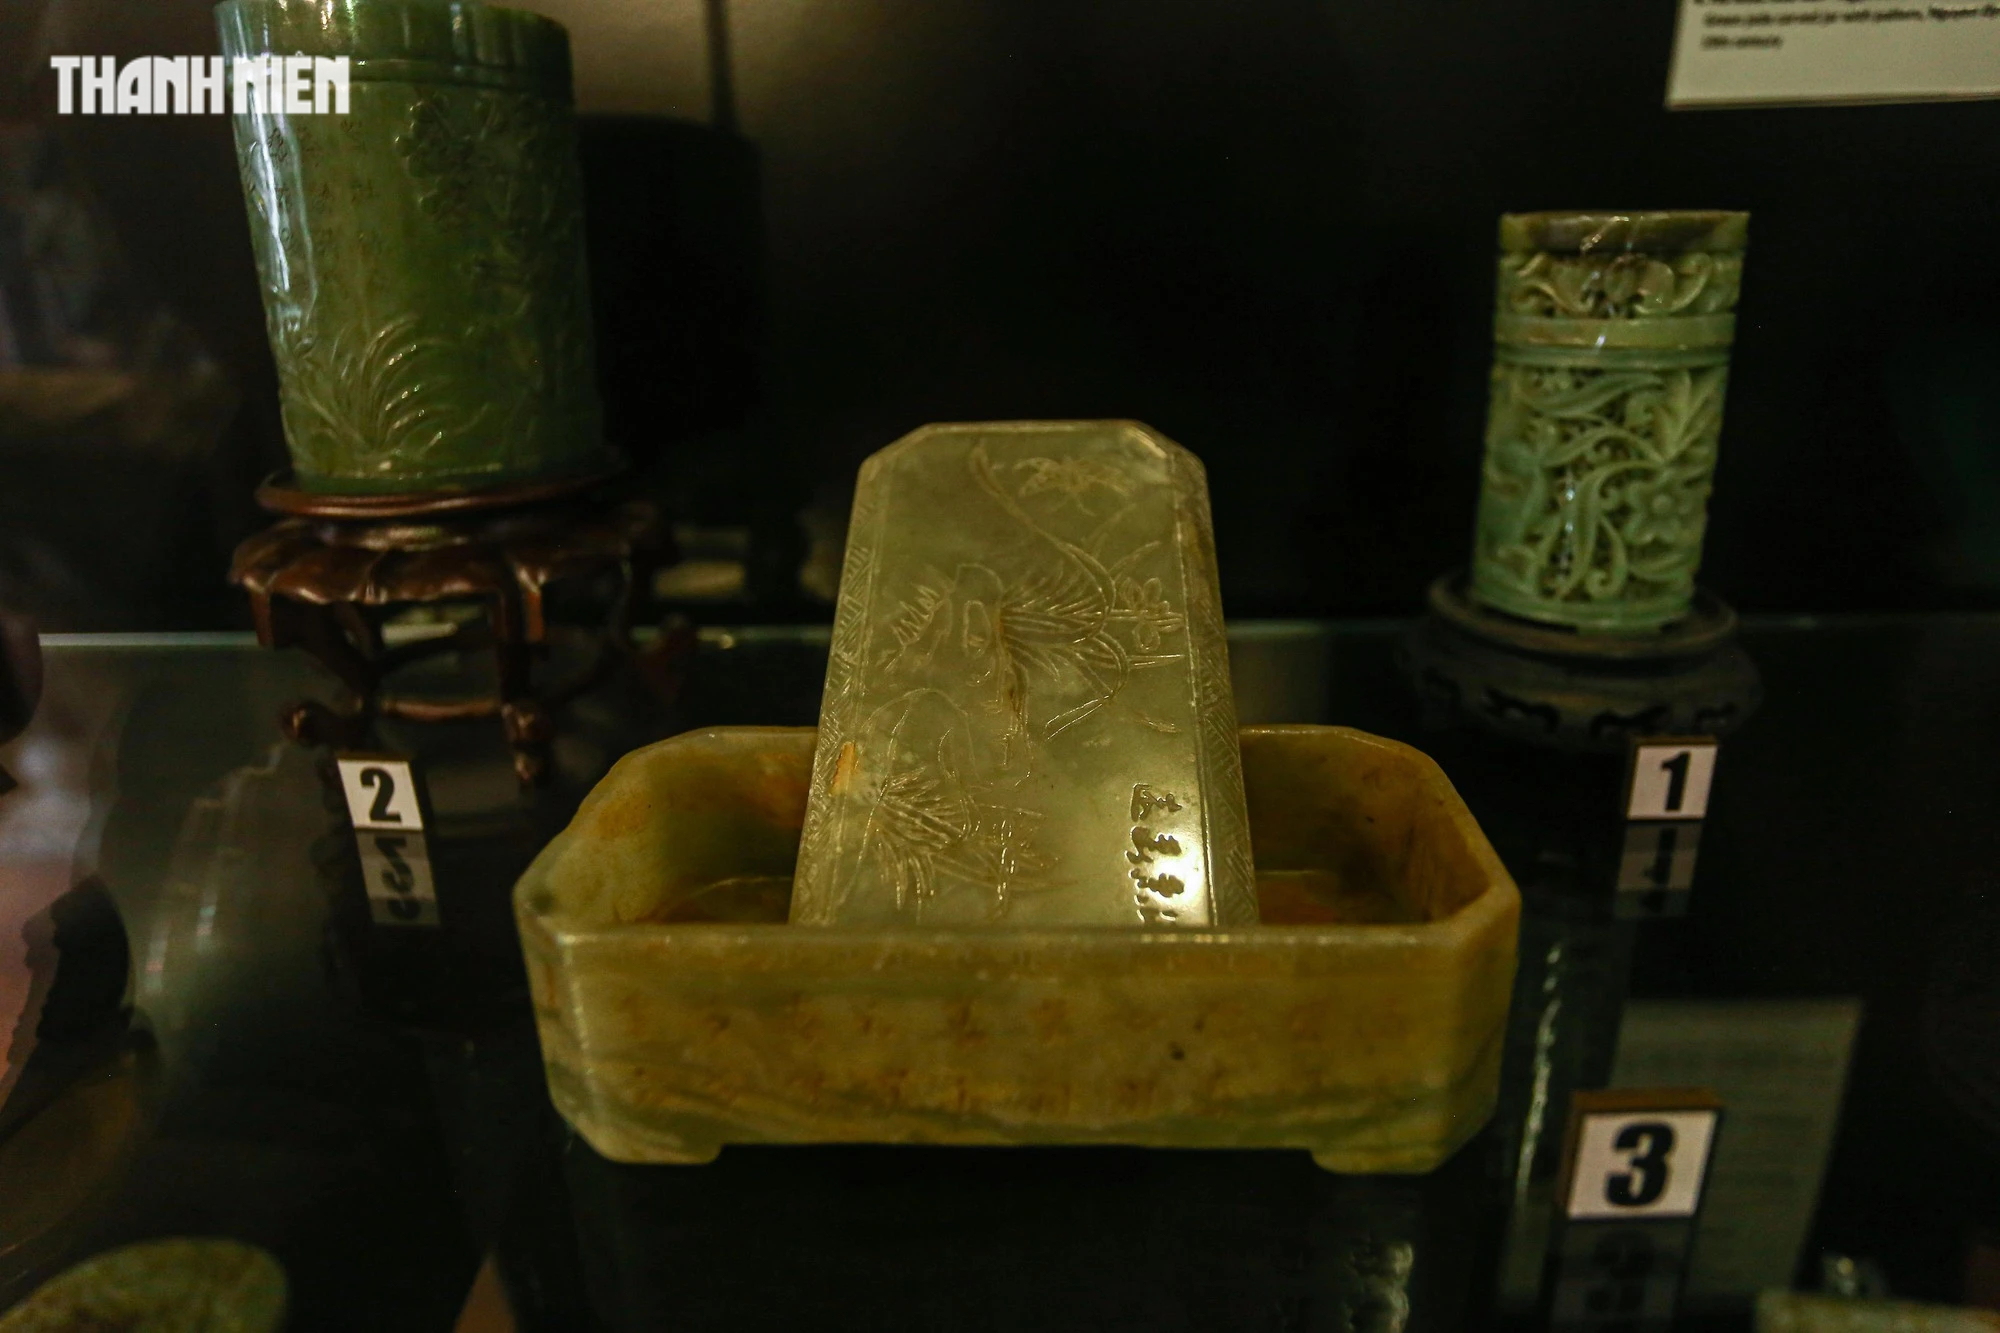 Chiêm ngưỡng hơn 70 món ngọc quý thời Nguyễn đang được trưng bày tại Huế - Ảnh 8.